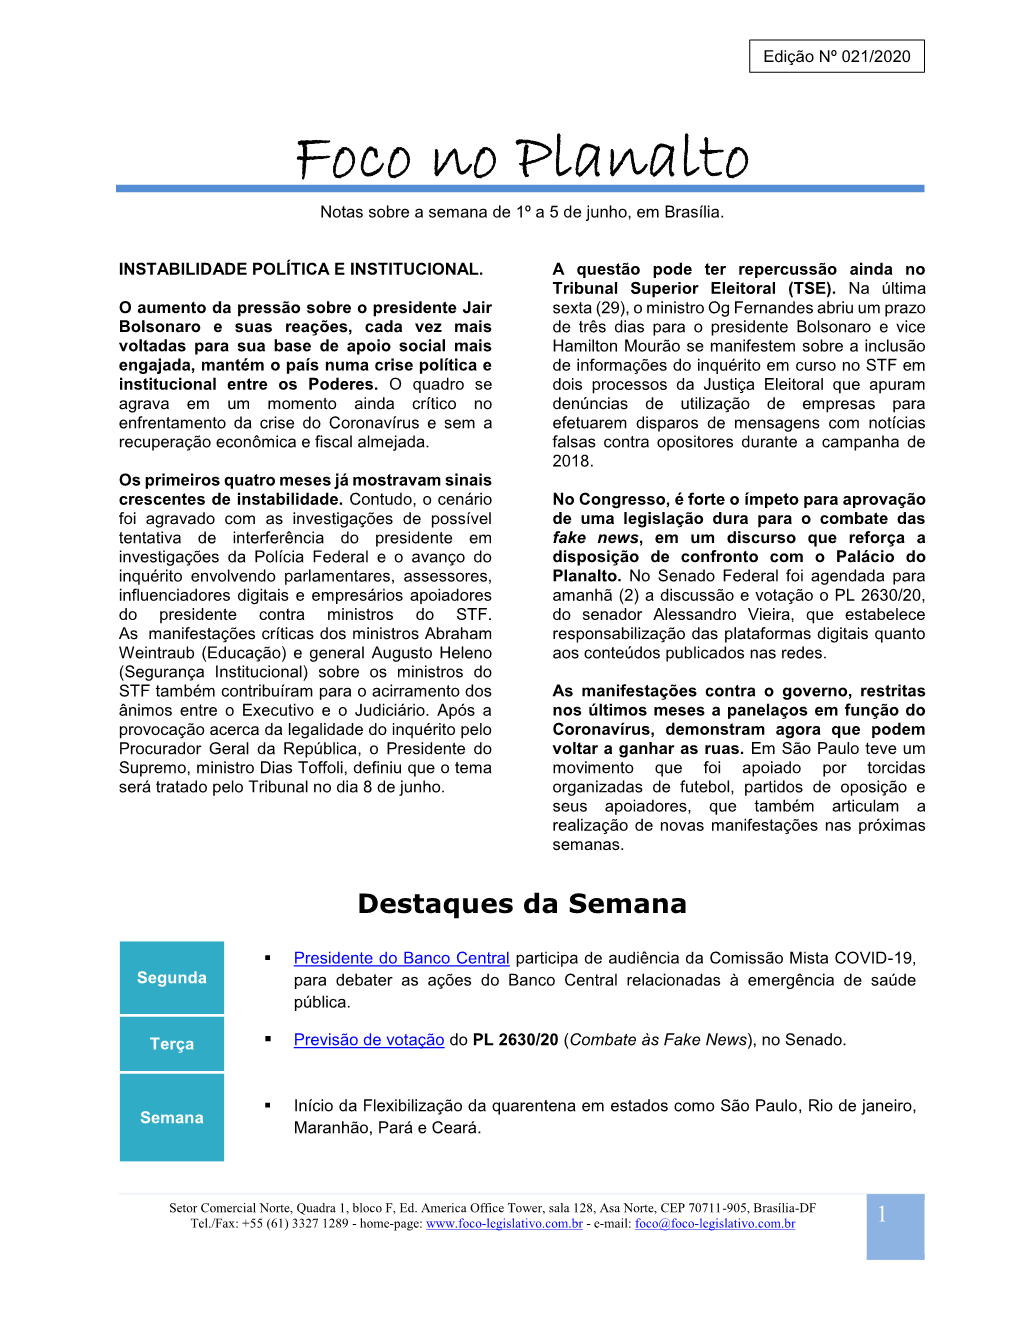 Foco No Planalto – Edi N 021 2020